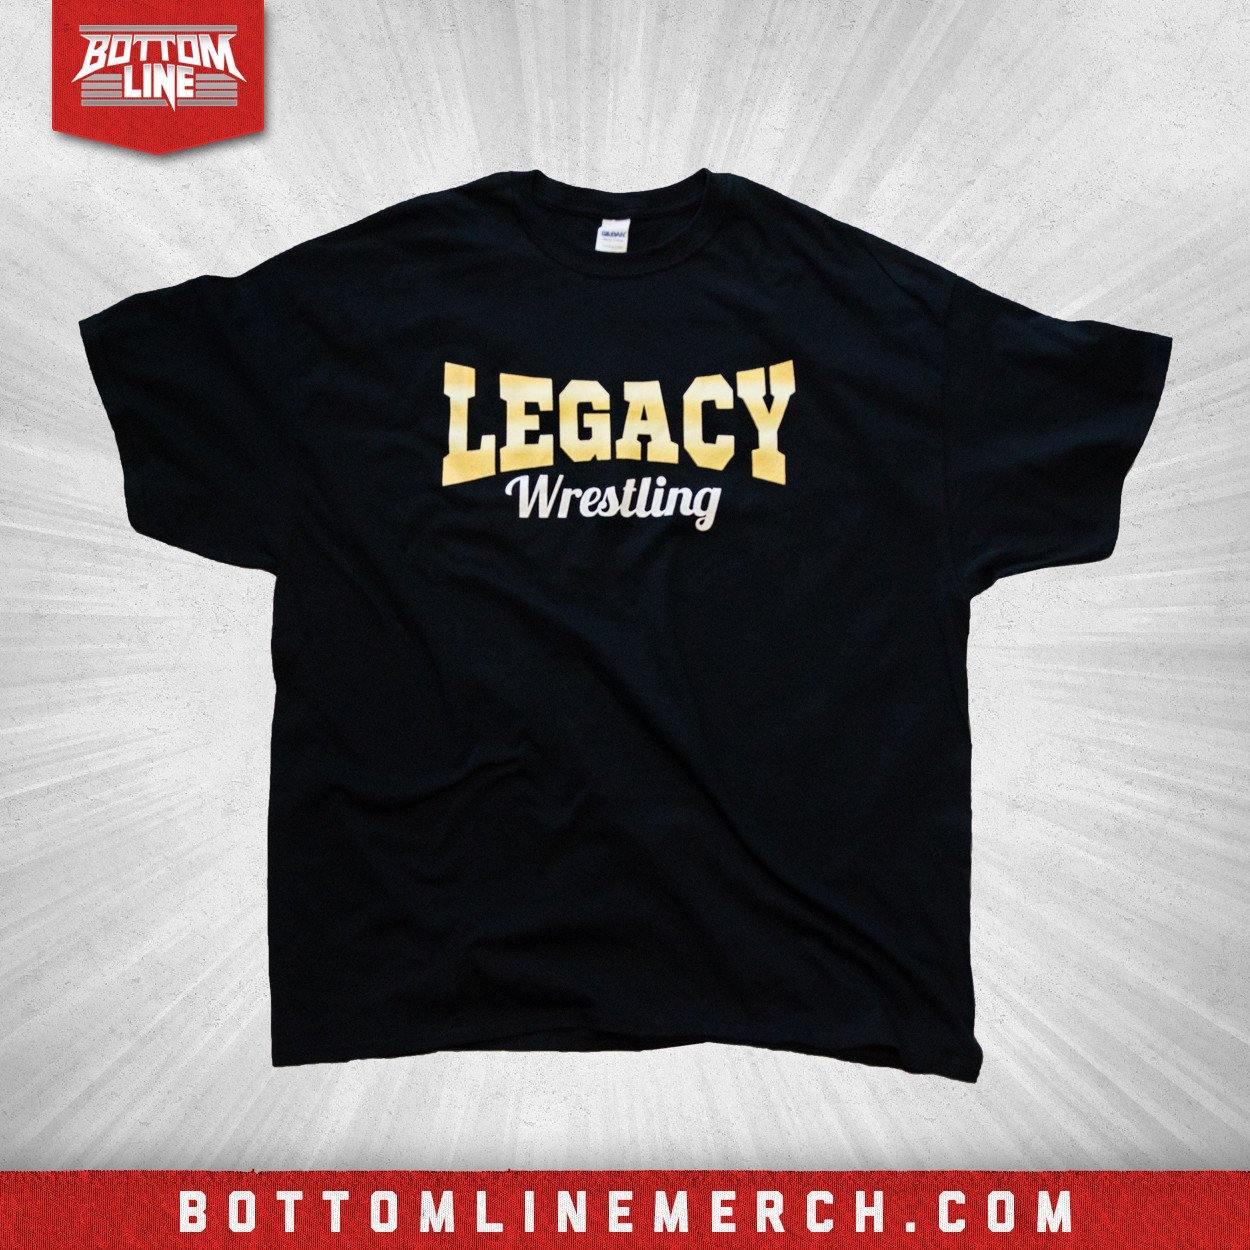 Buy Now – Legacy Wrestling "Logo" Black Shirt – Wrestler & Wrestling Merch – Bottom Line